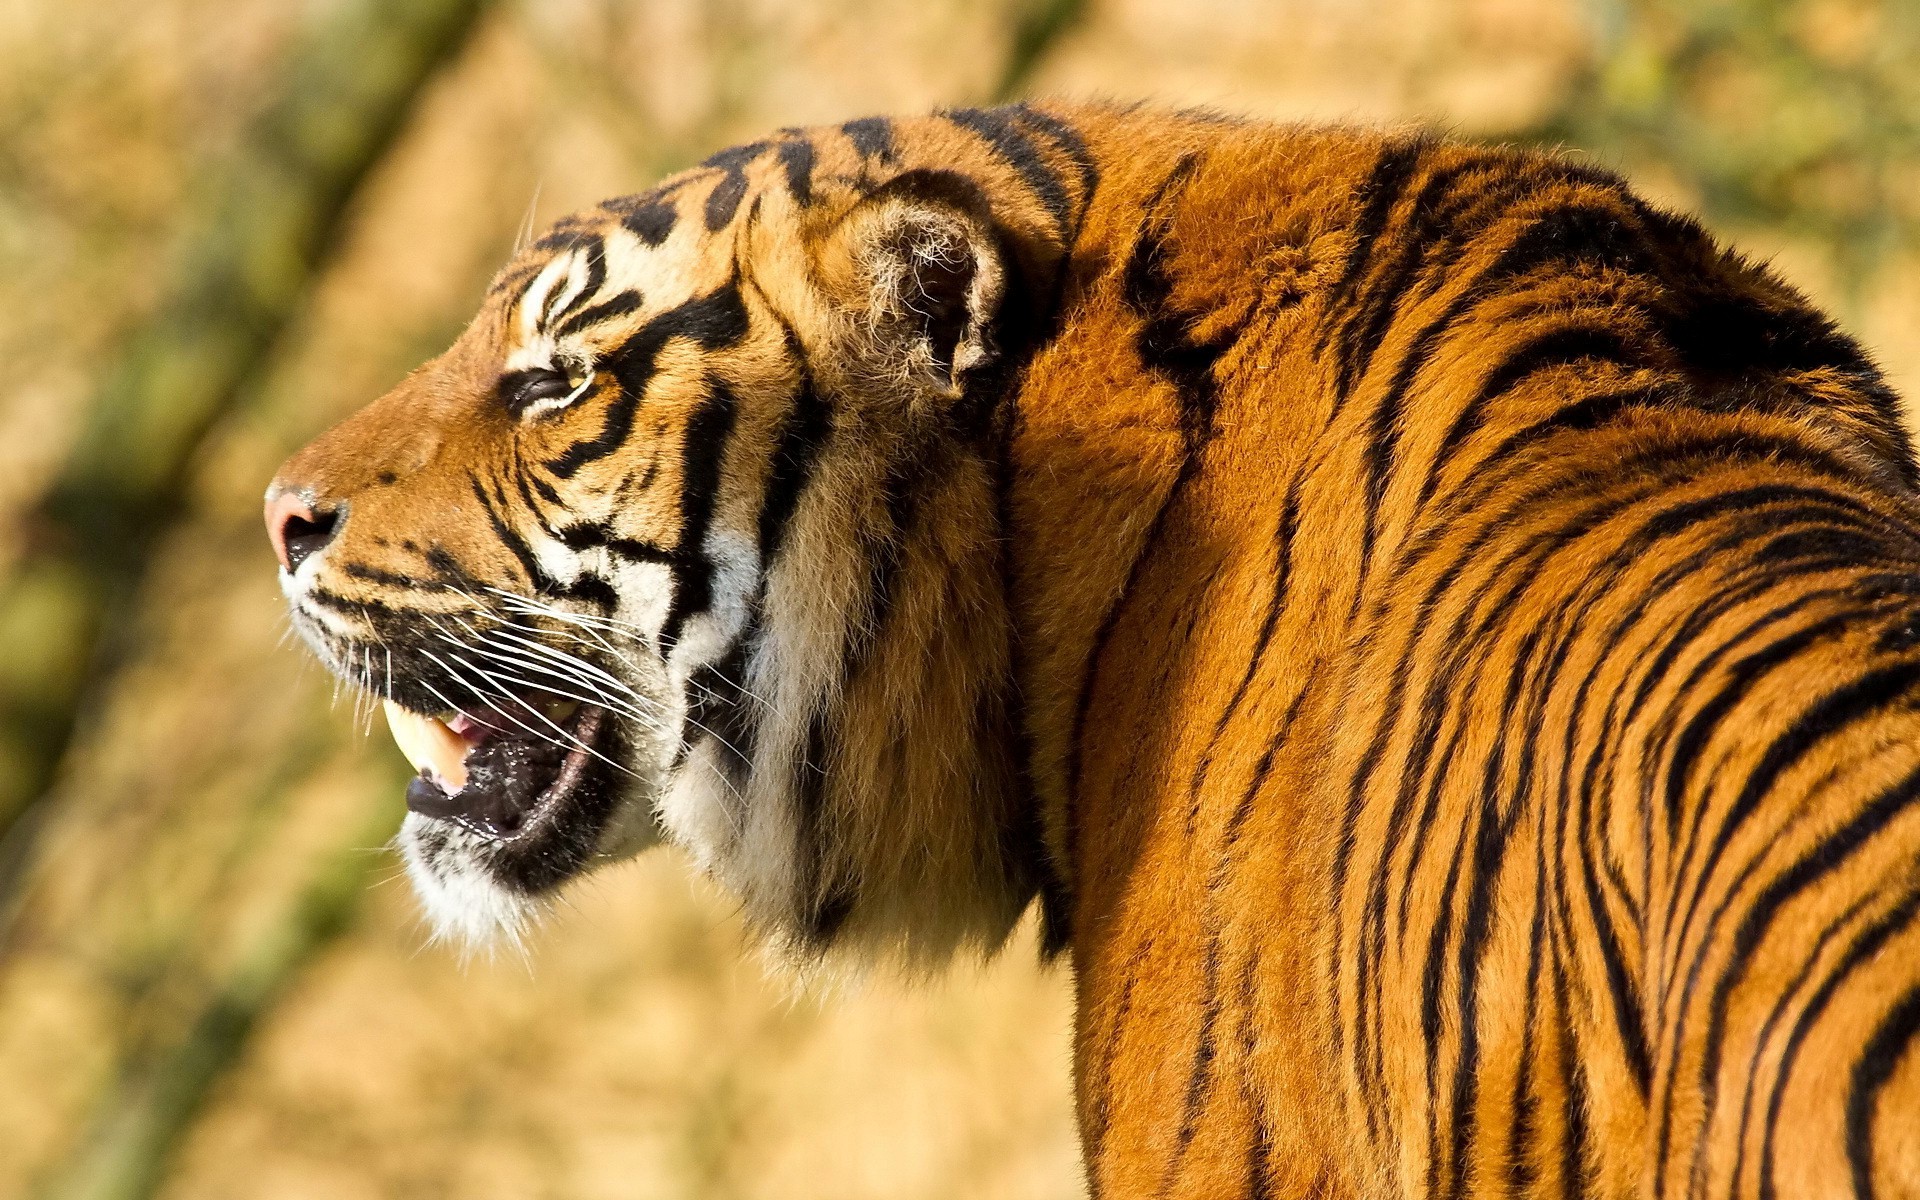 tigre arrabbiata hd wallpaper,tigre,natura,animale terrestre,tigre del bengala,tigre siberiana